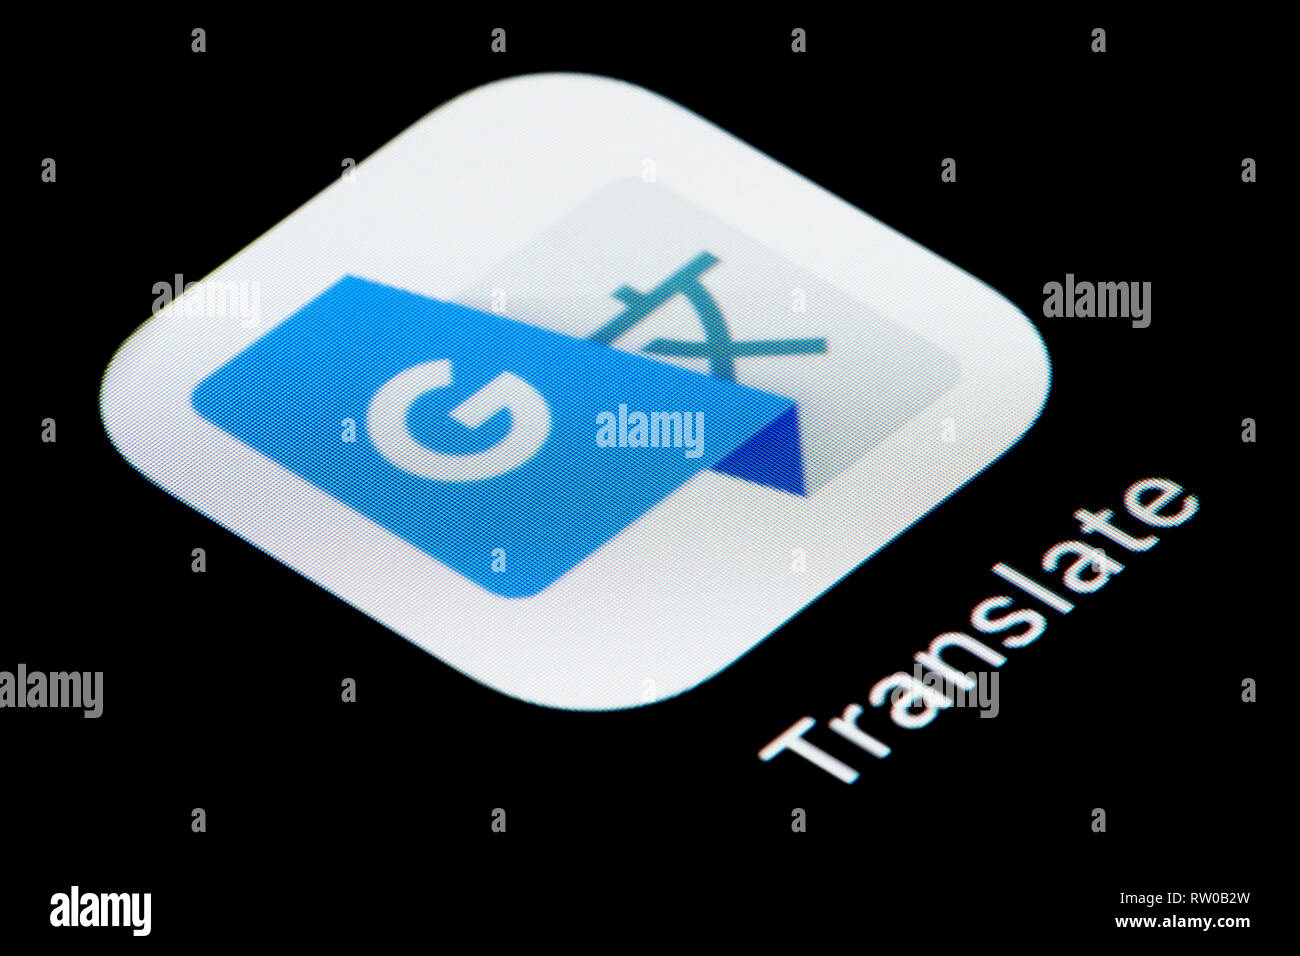 Un gros plan de l'icône de l'application Google Translate, comme on le voit sur l'écran d'un téléphone intelligent (usage éditorial uniquement) Banque D'Images